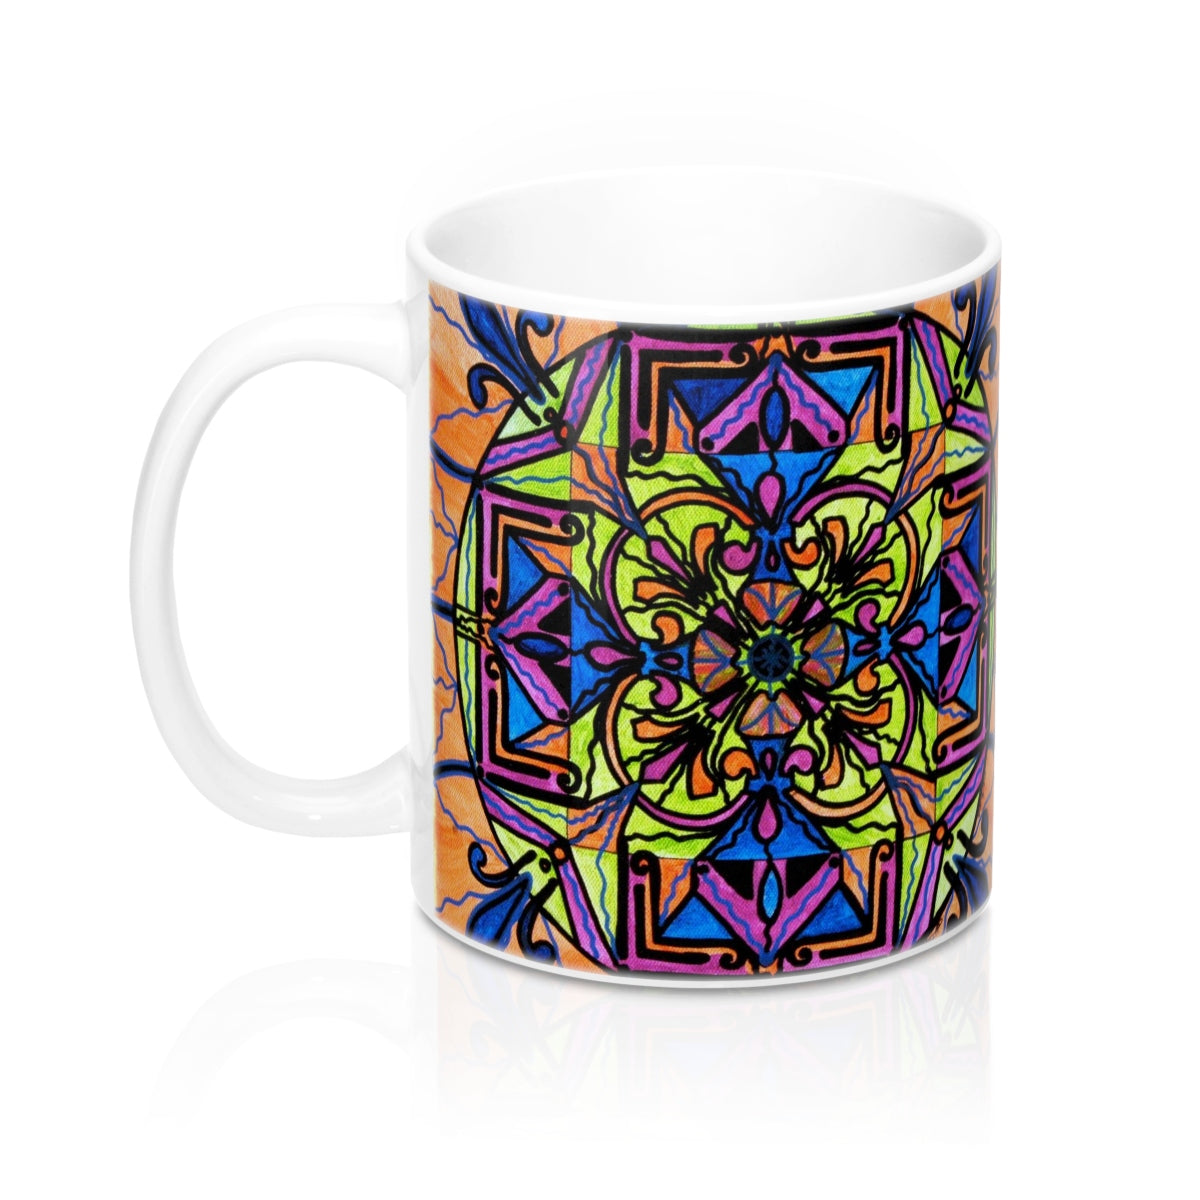 shop-authentic-uplift-mug-online-hot-sale_2.jpg